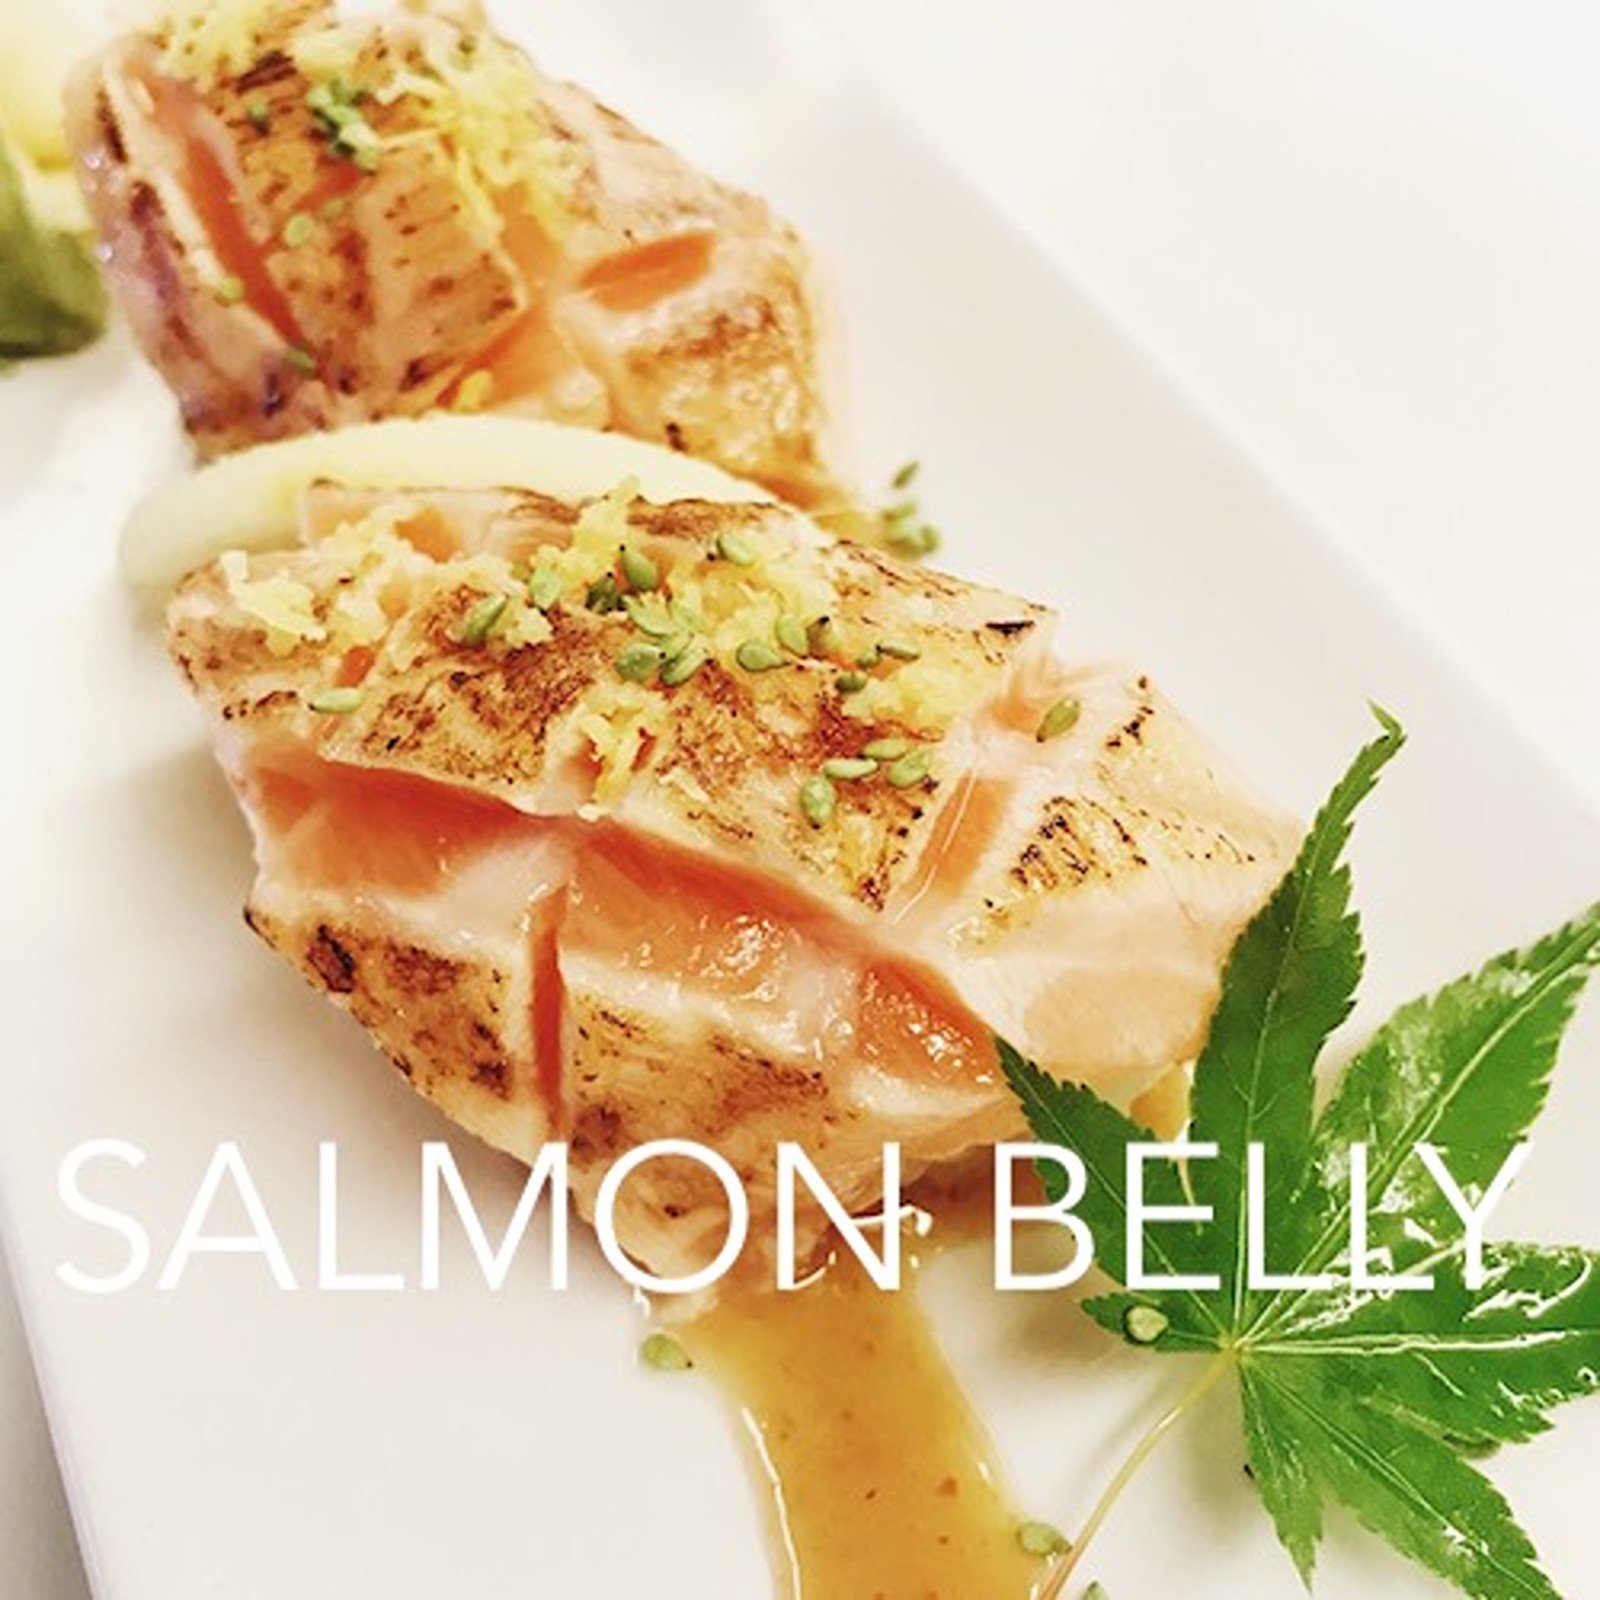 salmon belly. windy's sukiyakijpeg.jpg